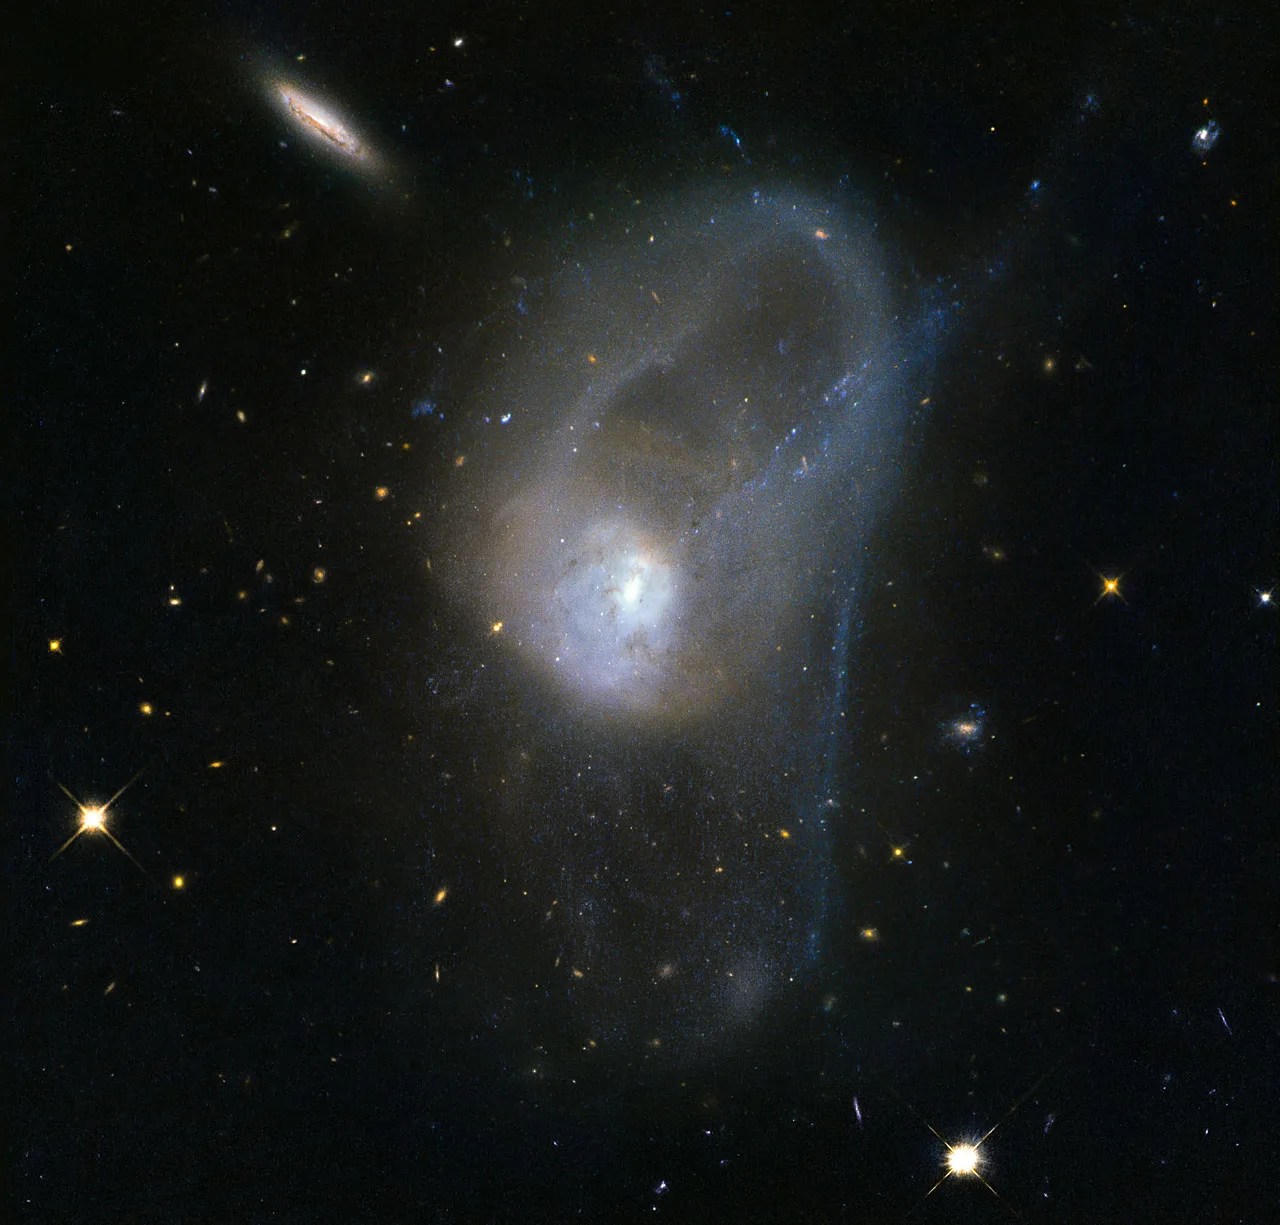 Pair of interacting galaxies merging